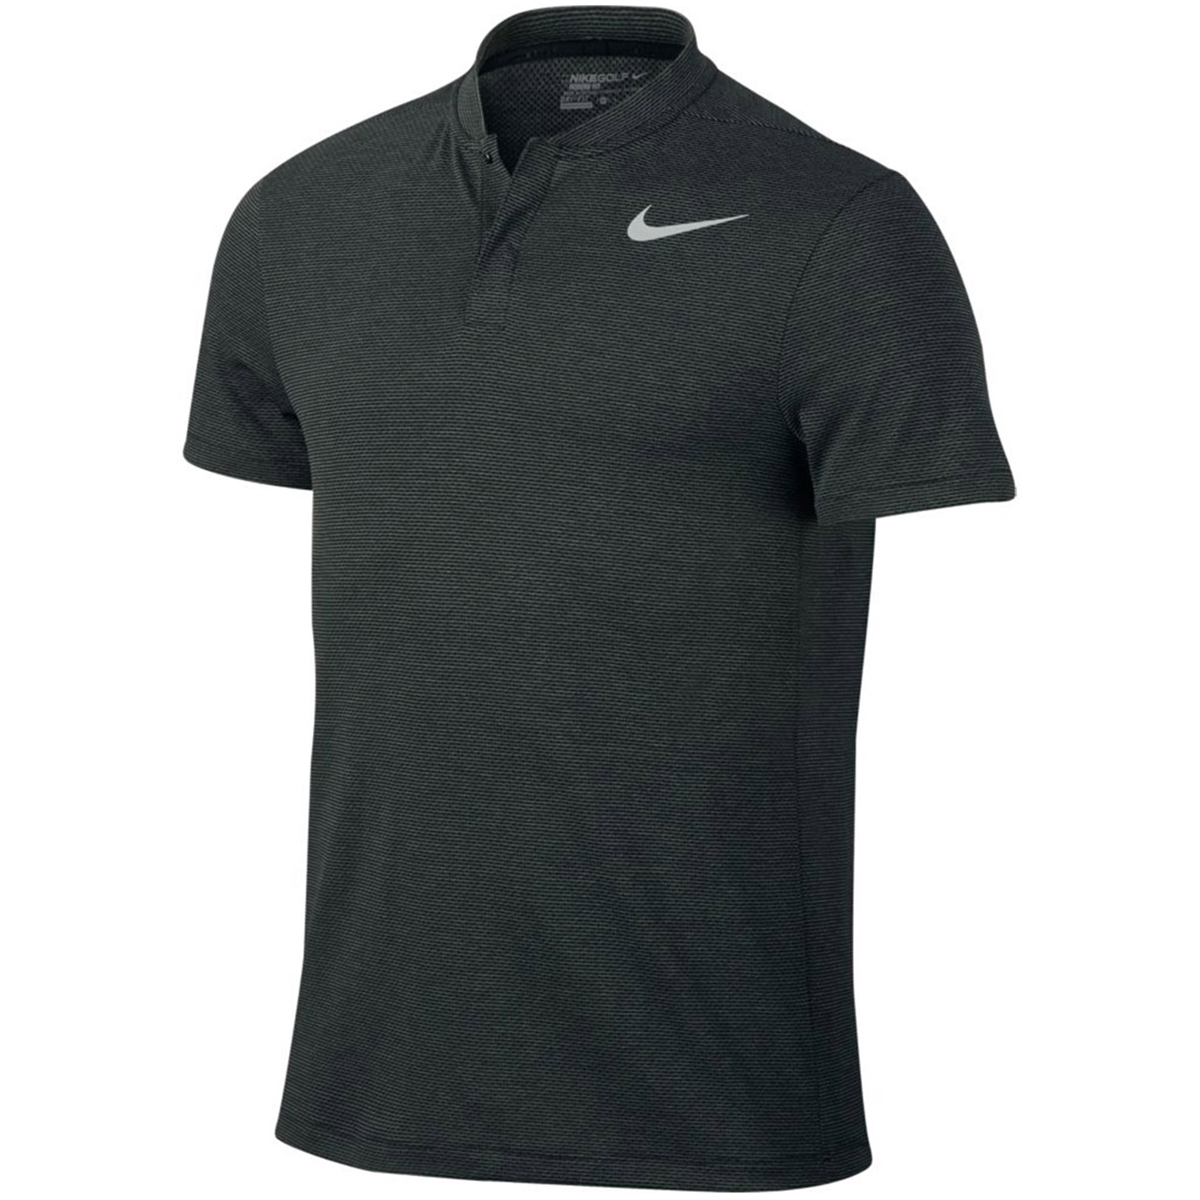 olvidadizo Seguro escala Nike Golf MM Fly AeroReact Blade Polo Shirt | Online Golf